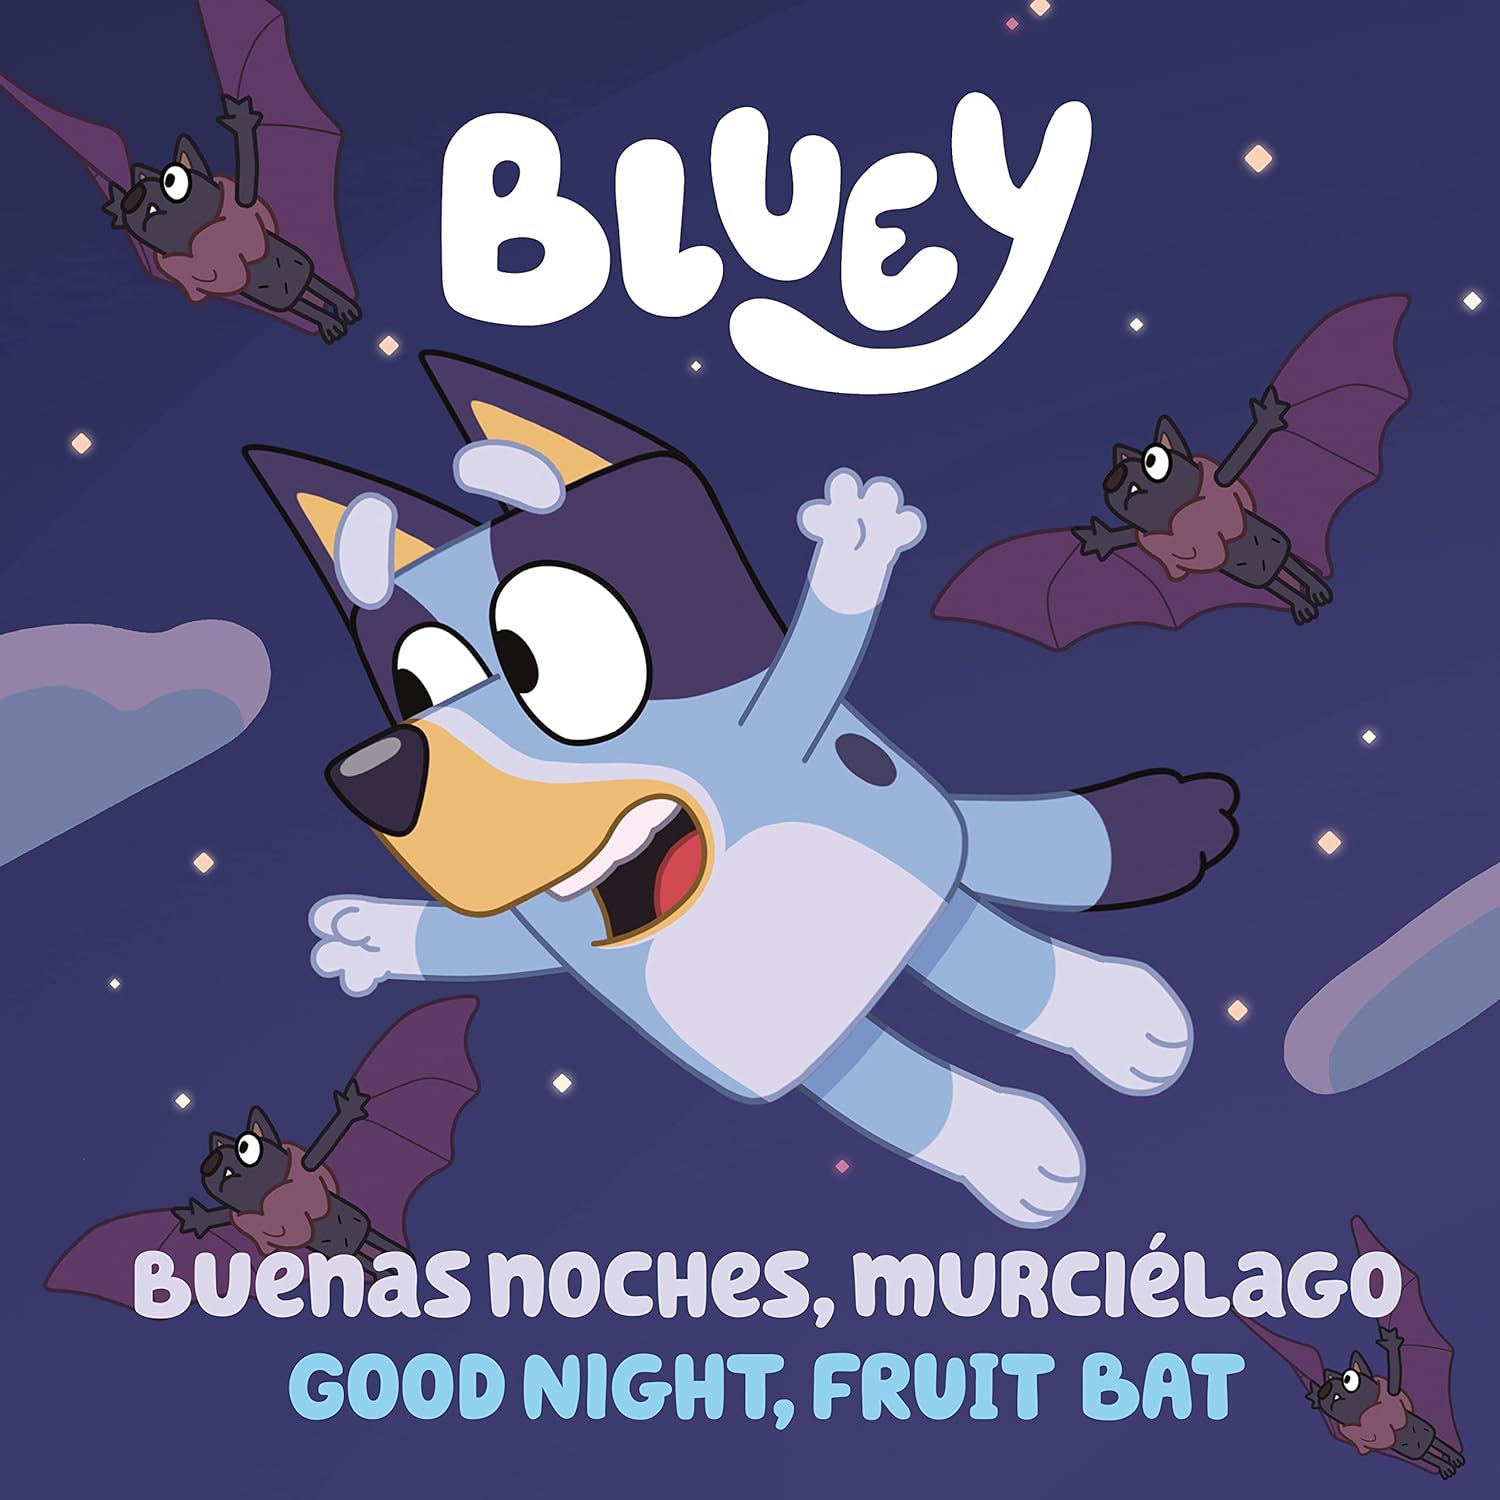 Bluey: Buenas noches, murcielago